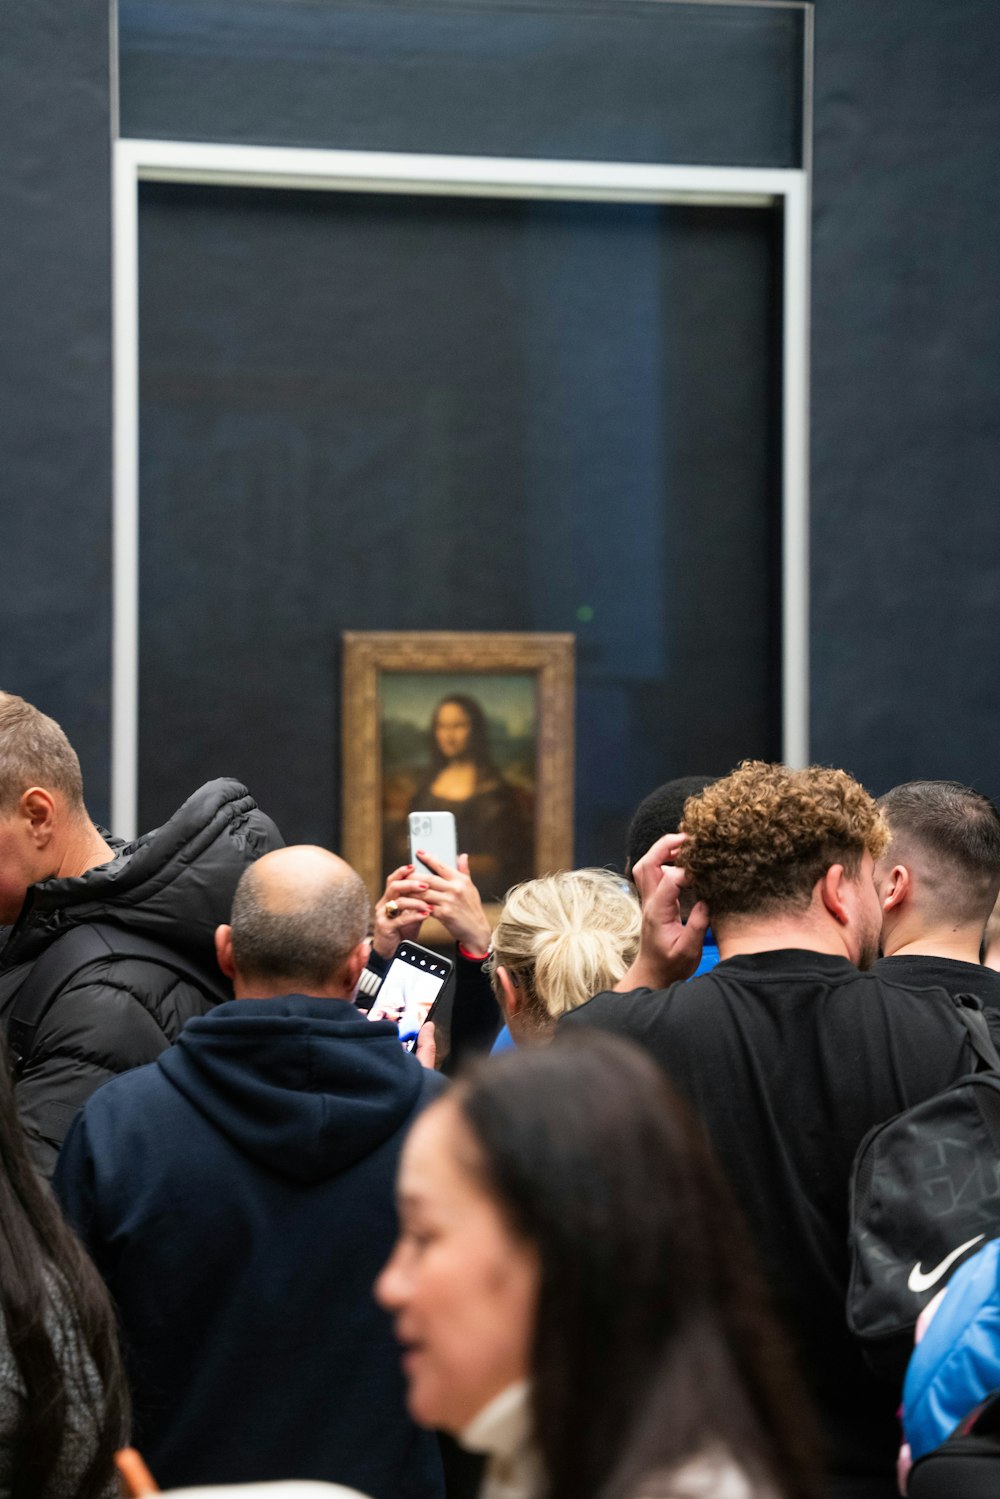 Un grupo de personas mirando una pintura en una pared